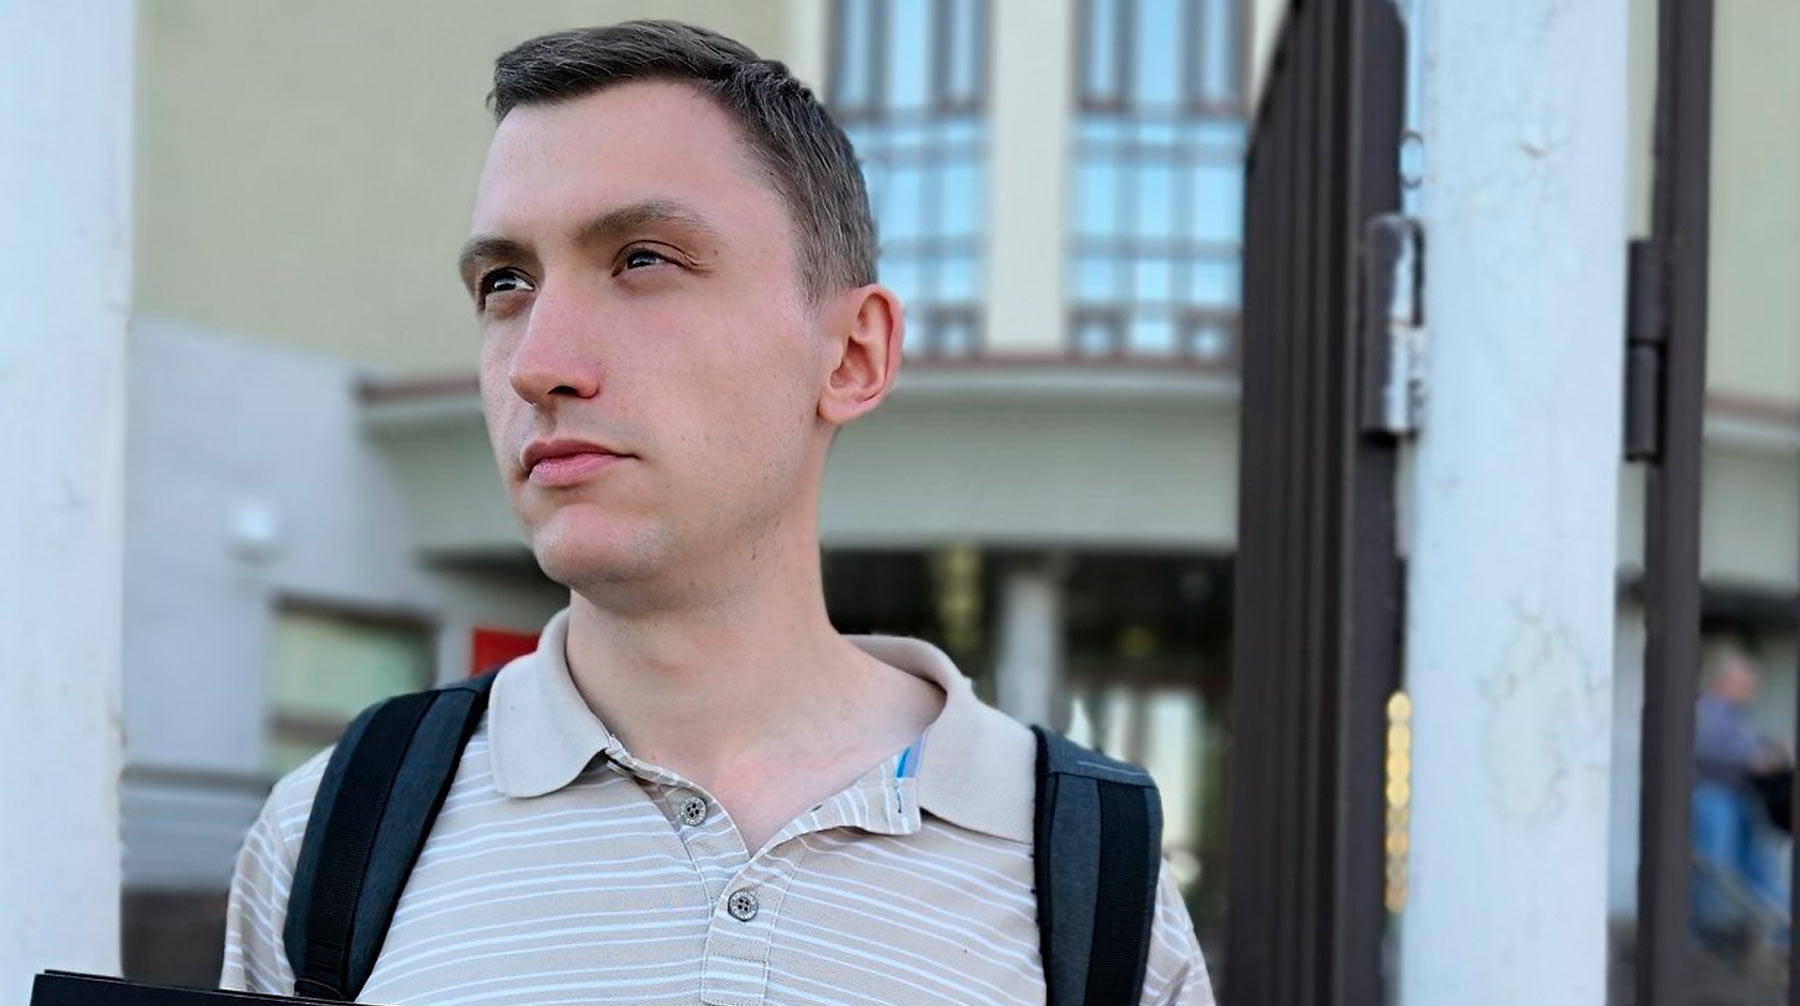 Правоохранители обжаловали приговор активисту и попросили снизить срок заключения с четырех лет до одного года Константин Котов